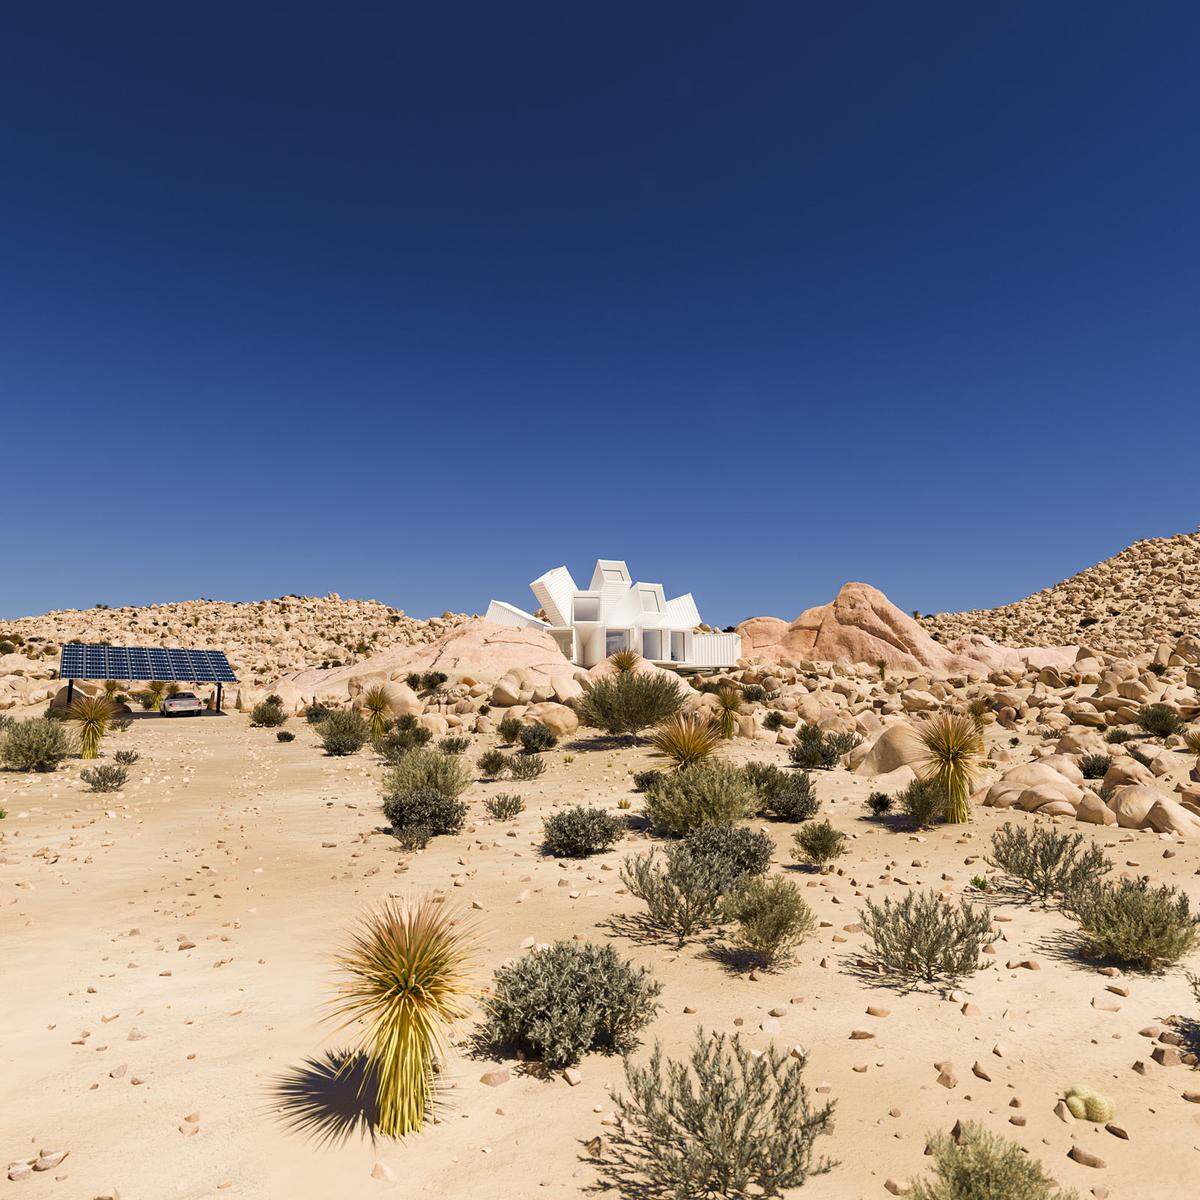 Für die nötige Stromversorgung in der Wüste sollen Solarpaneele sorgen, die gleichzeitig auch als Dach des Carports fungieren.    